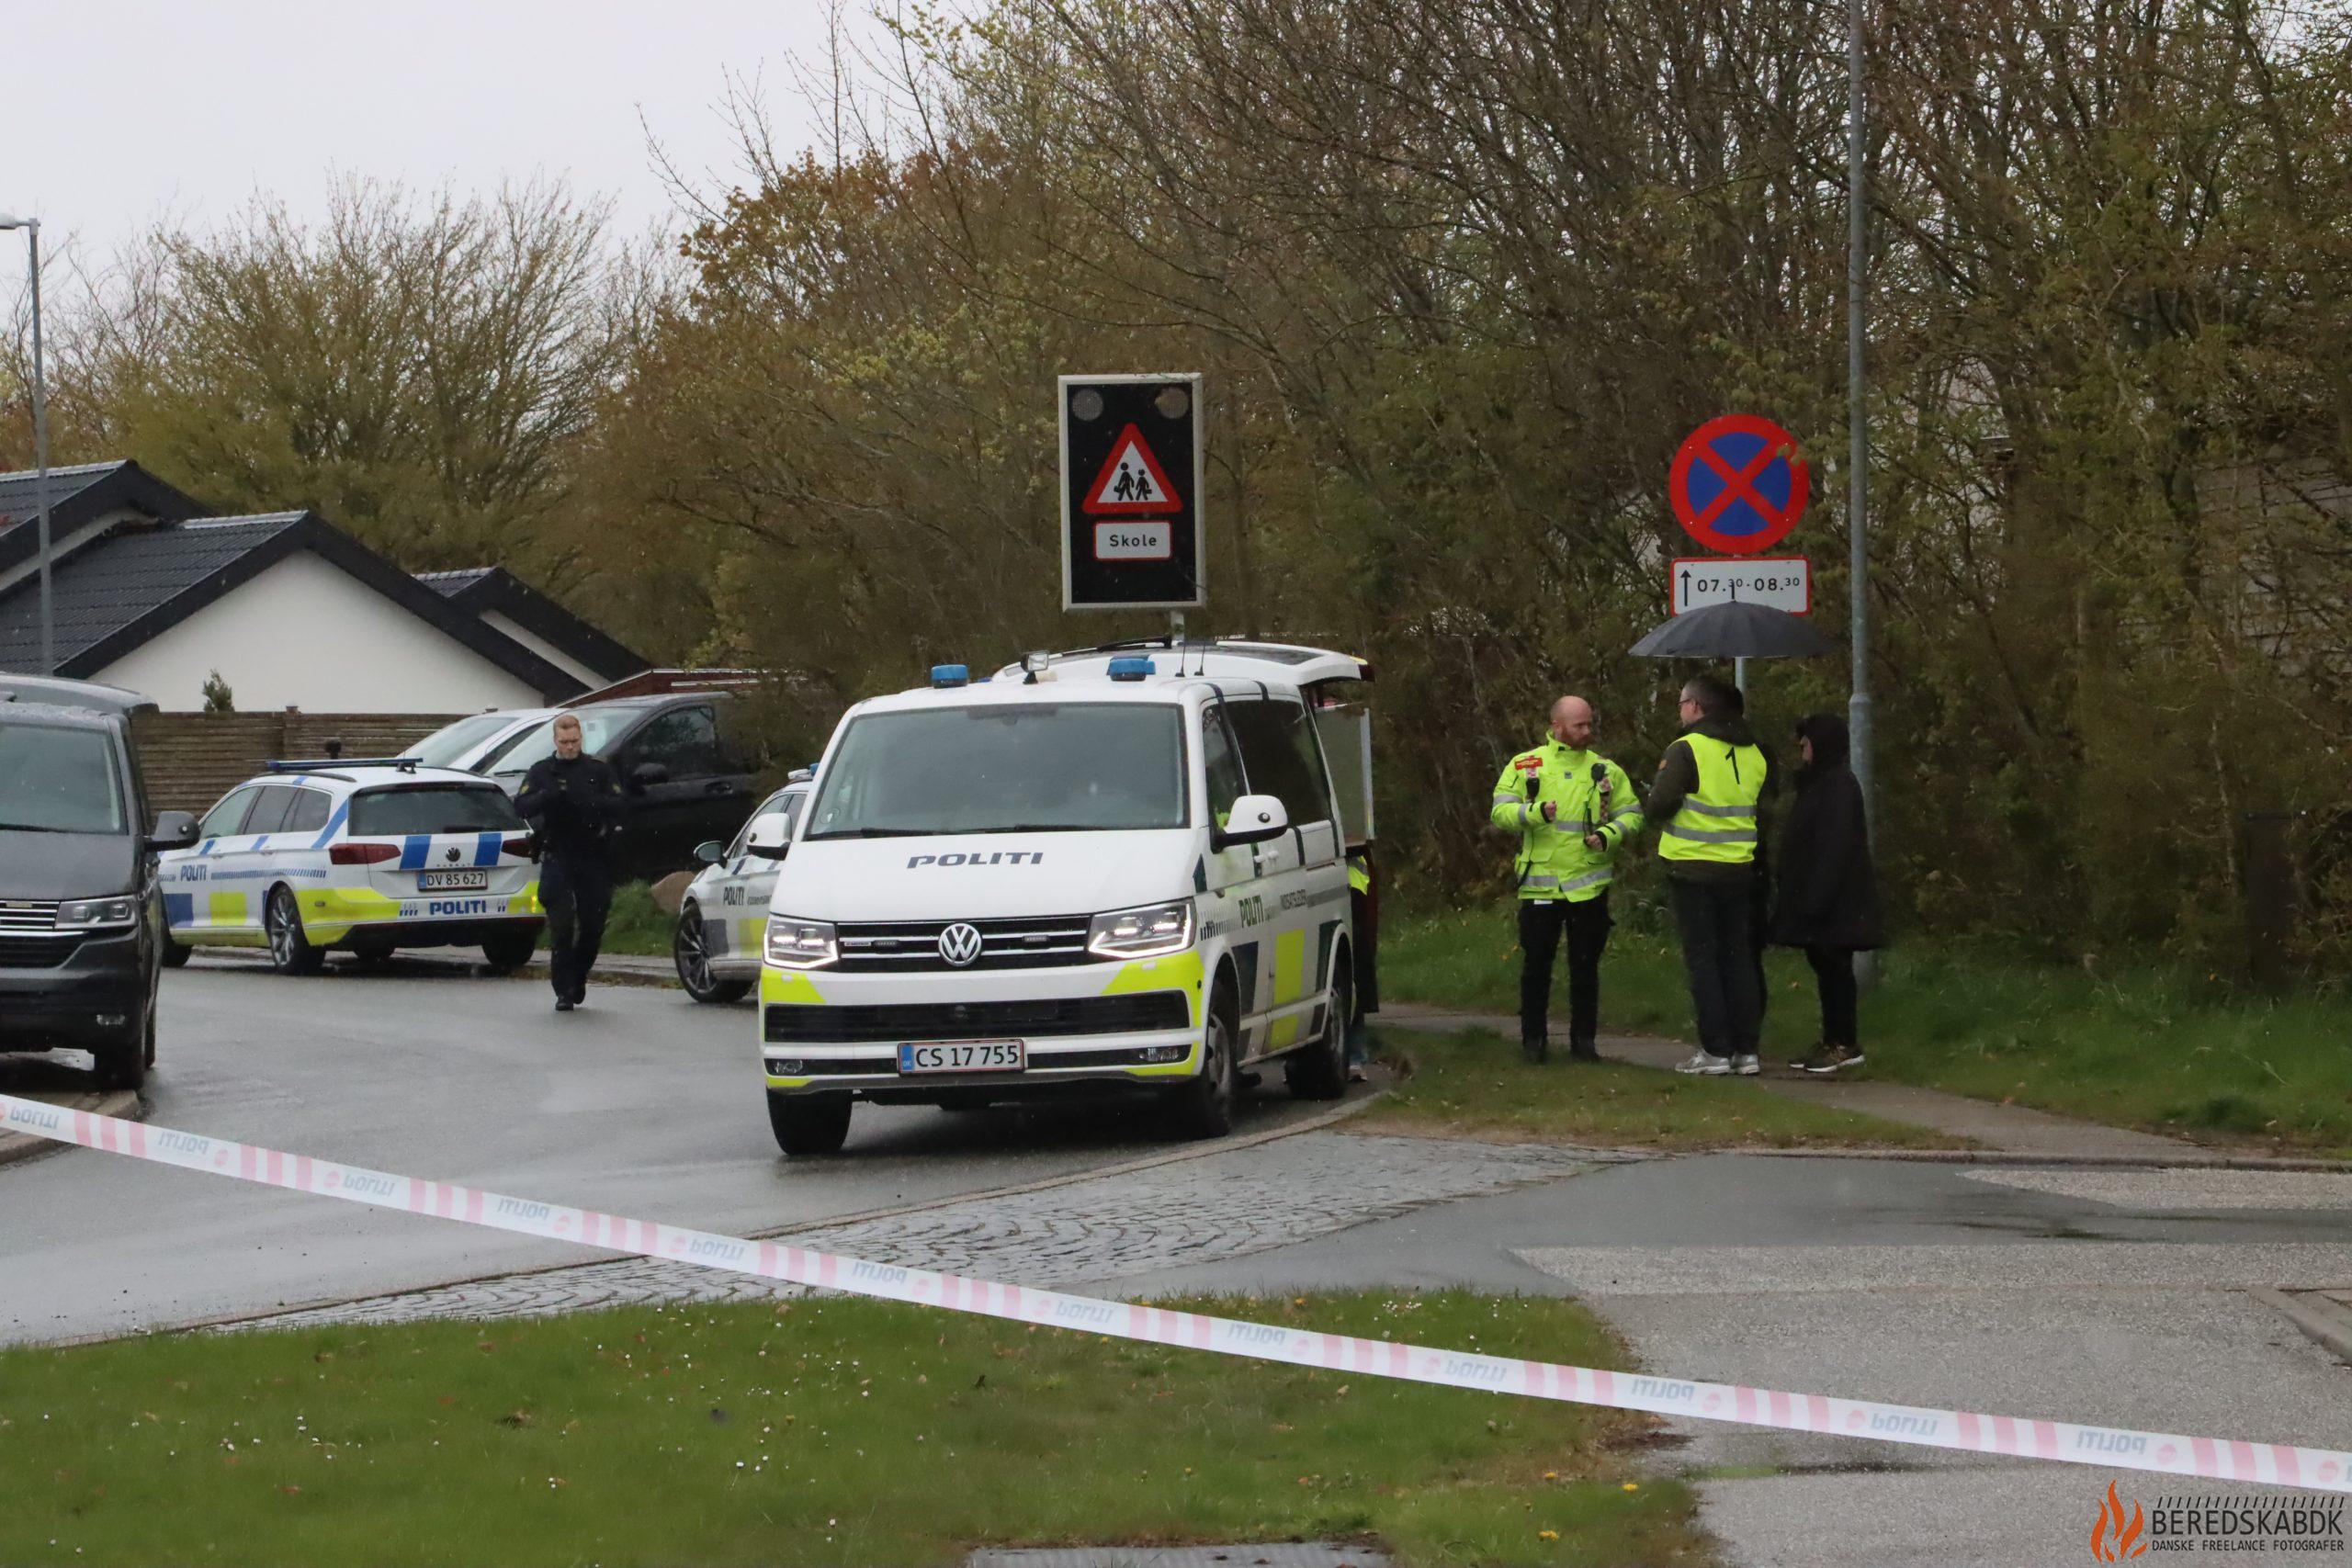 23/04-24 Aarhus: Bombetrussel mod skole i Lystrup